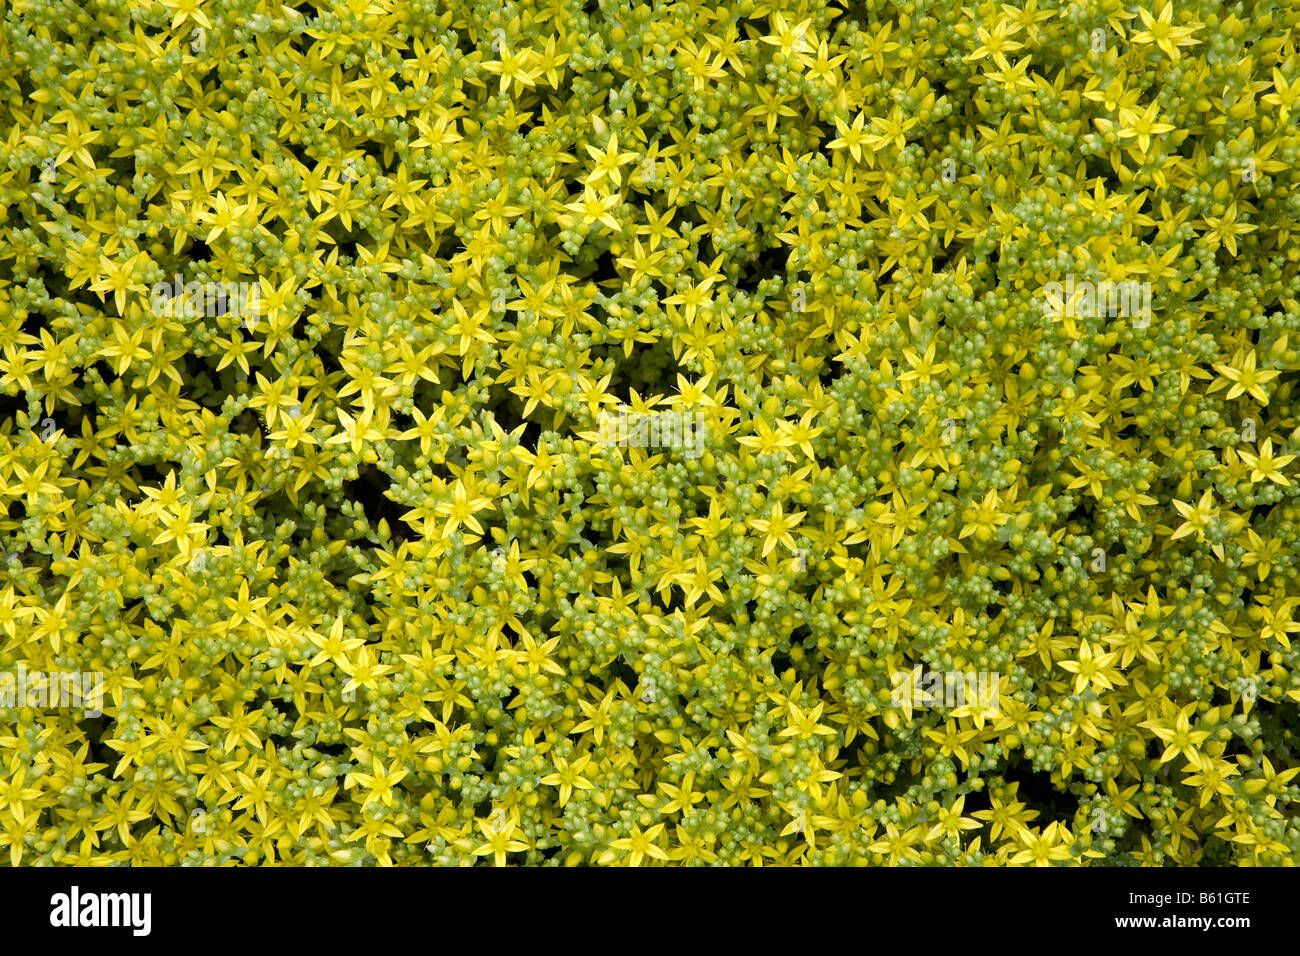 Goldmoss stonecrop (Sedum acre) in bloom Stock Photo